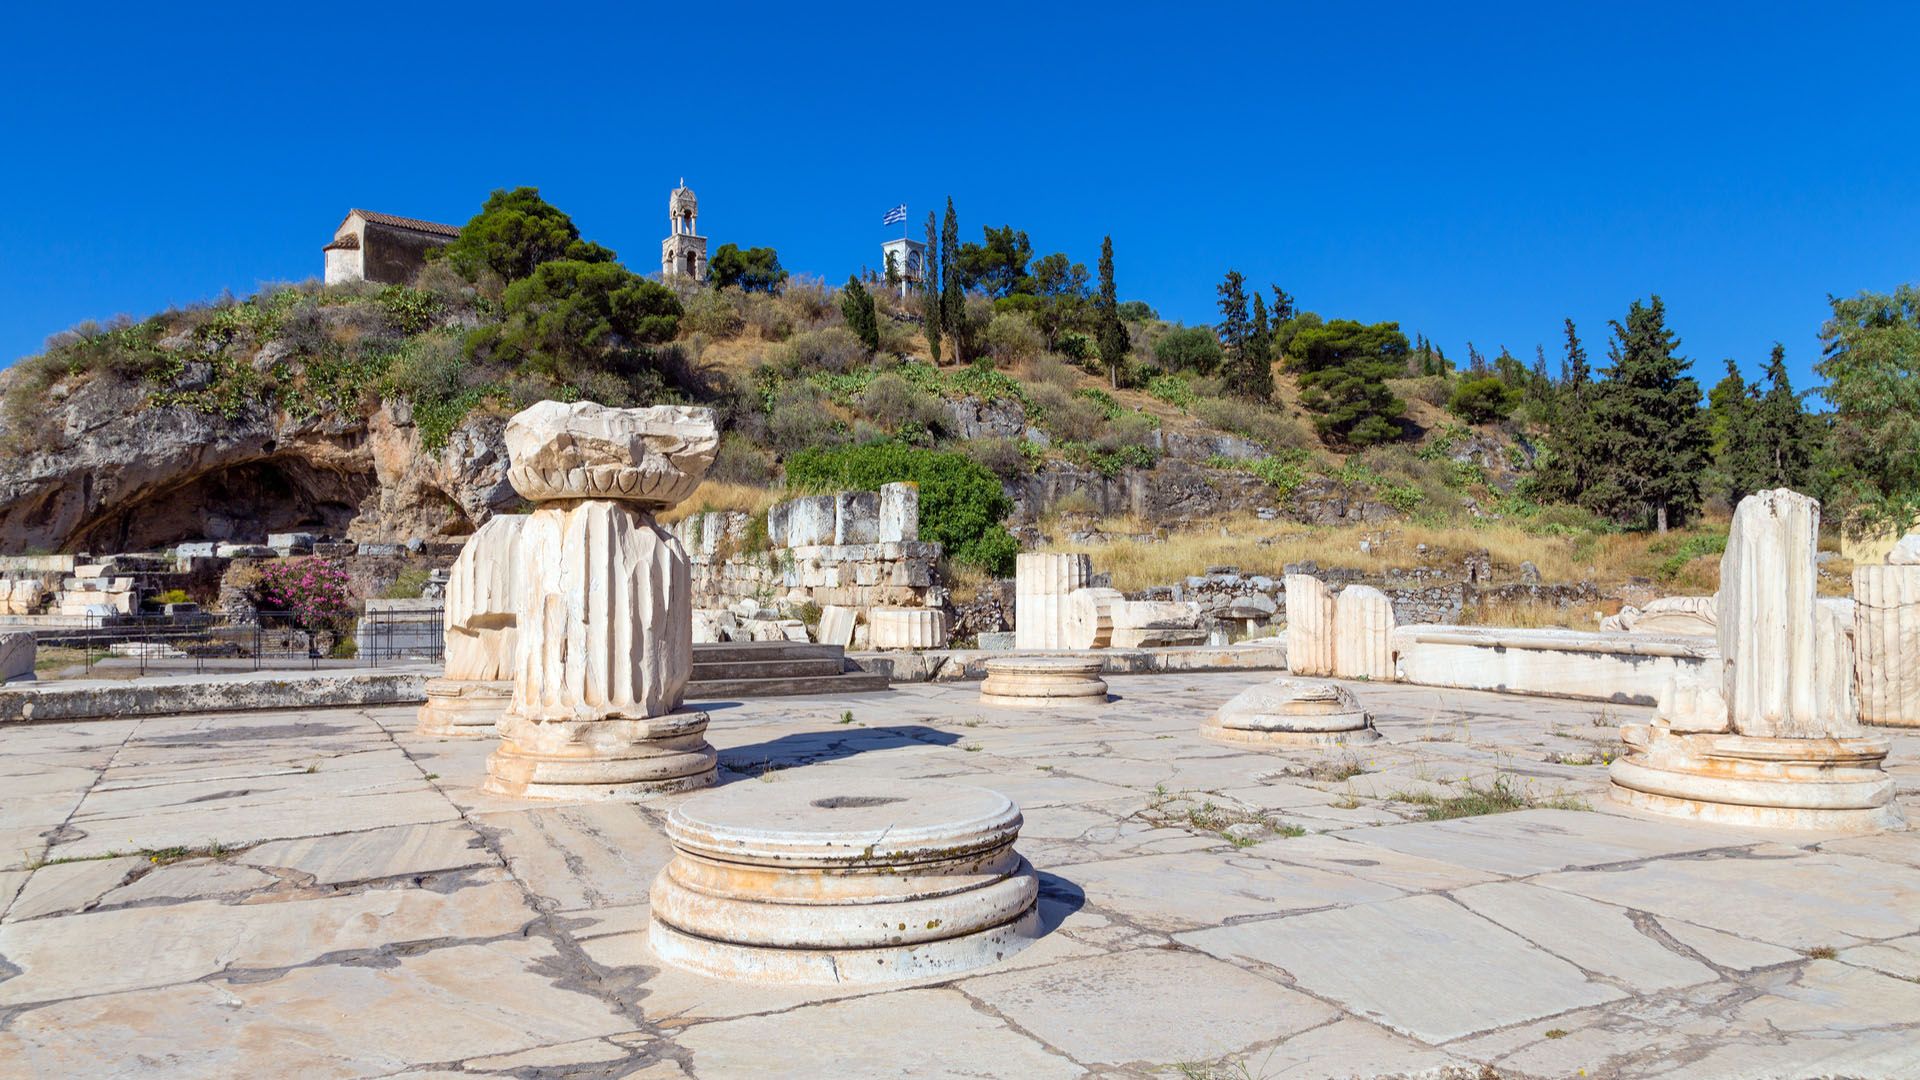 Eleusis – Seeking ancient rituals, Eleusis, Attika, Archaeological Site of Eleusis